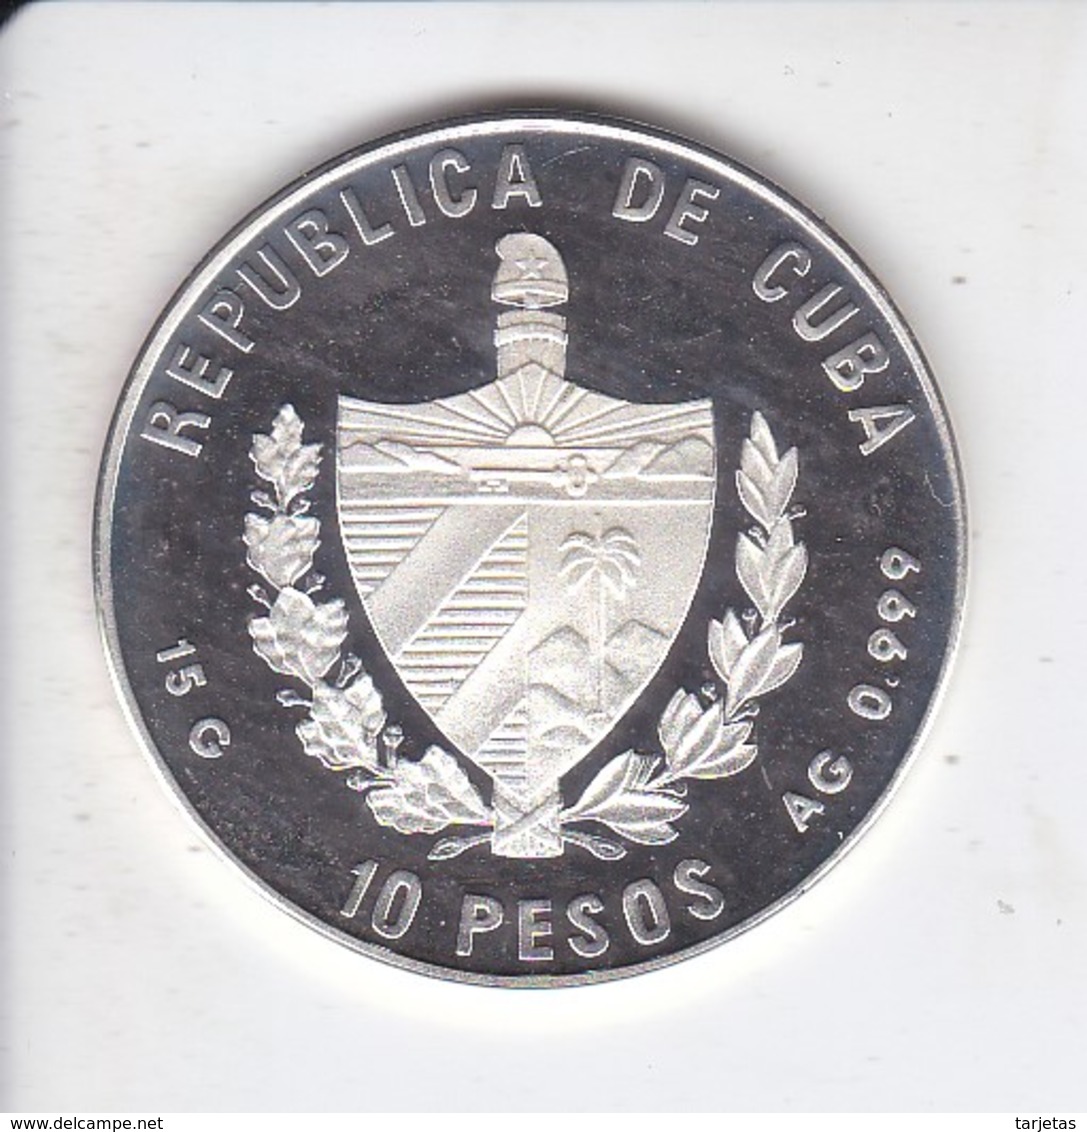 MONEDA DE PLATA DE CUBA DE 10 PESOS AÑO 1996 DE 150 AÑOS FERROCARRIL AUSTRIA (SILVER-ARGENT) TREN-TRAIN-ZUG - Cuba